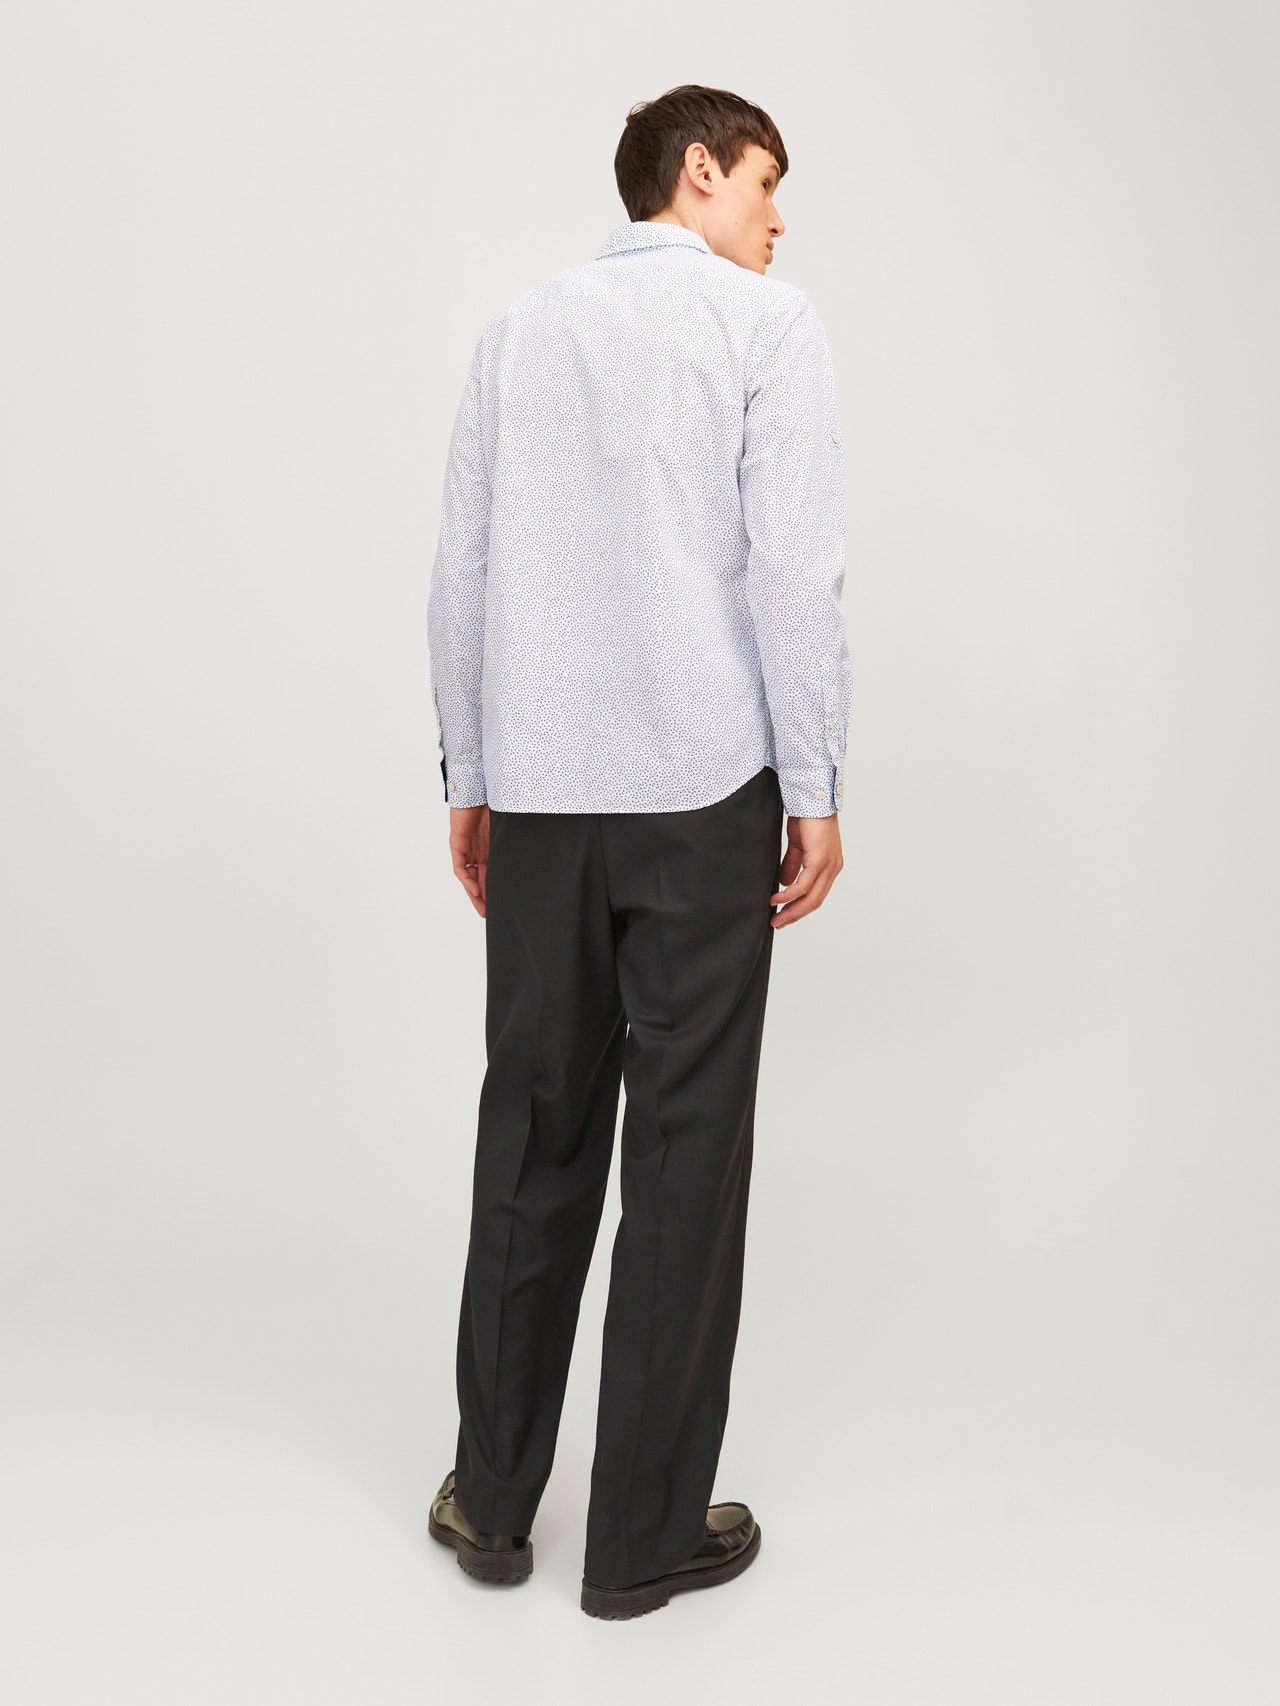 Jack & Jones Camicia formale Slim Fit -Bright White - 12235969